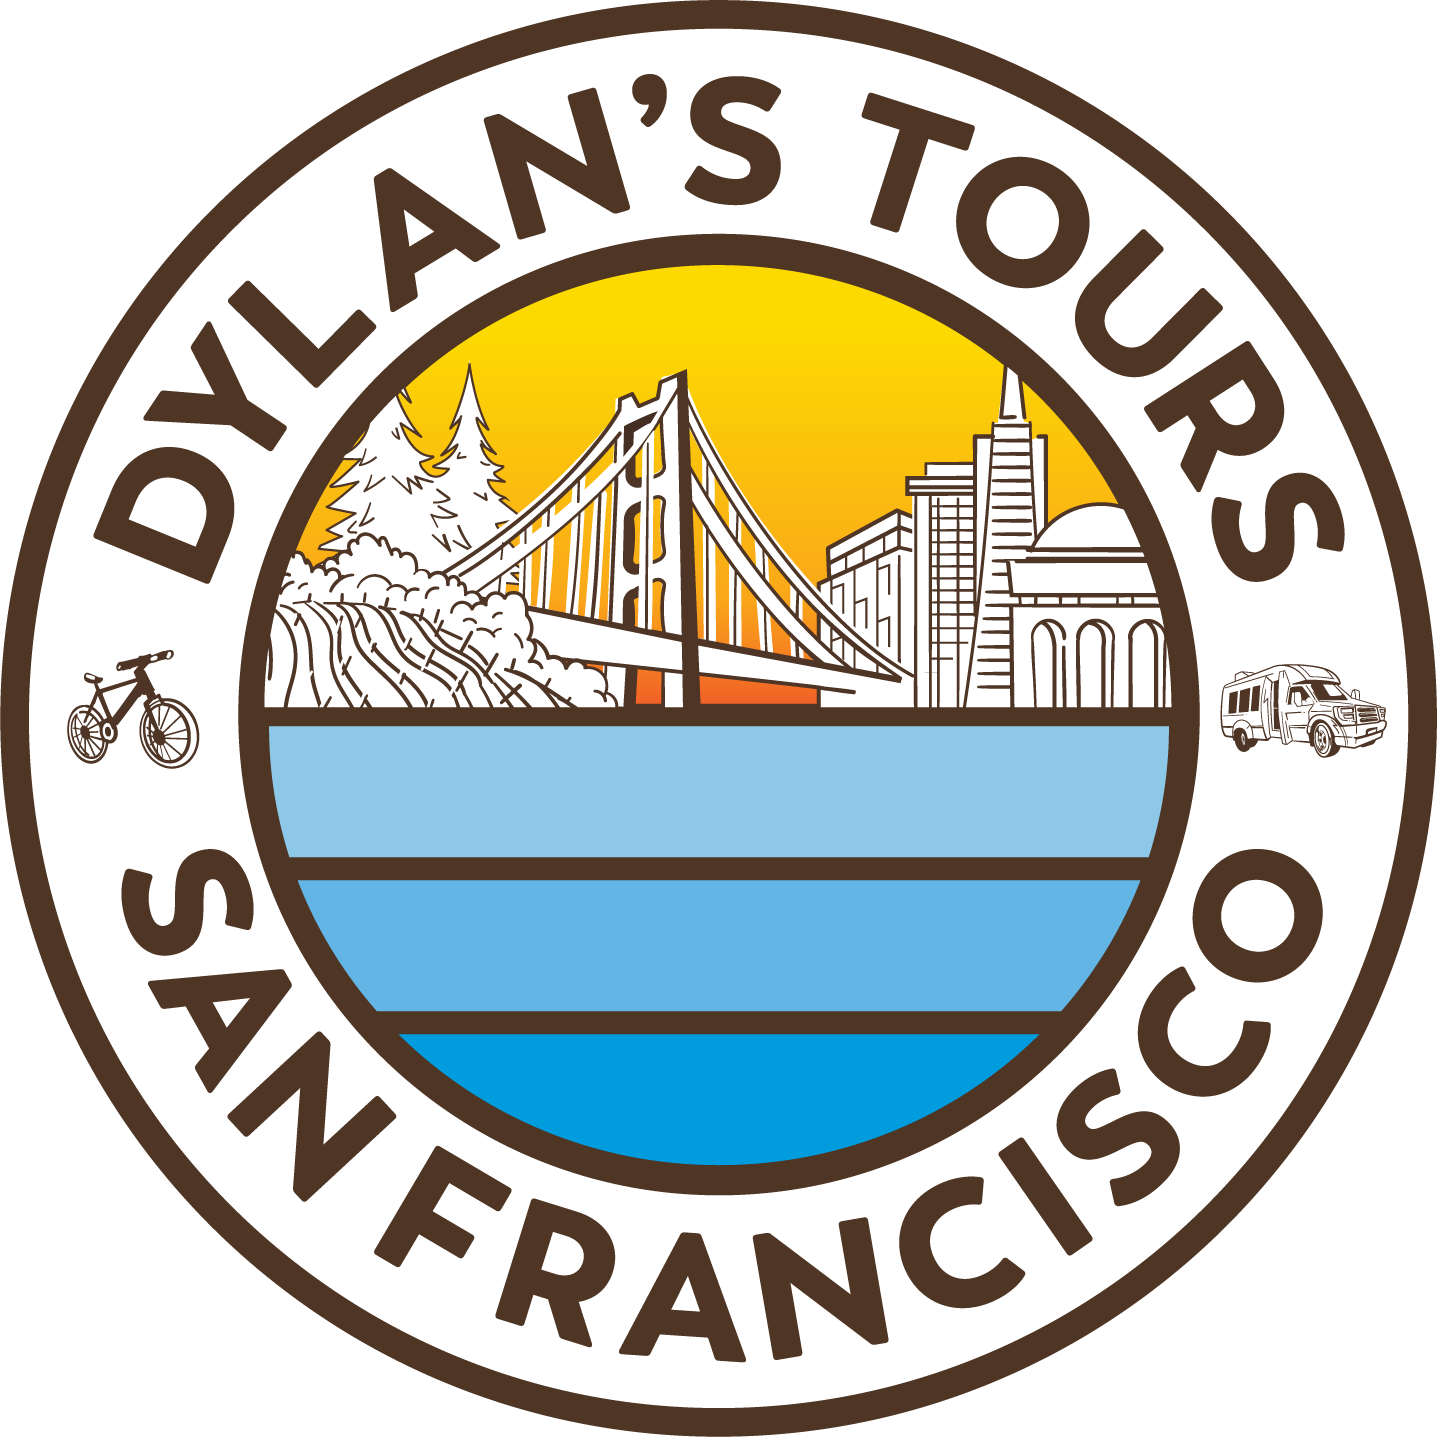 Dylan's Tours San Francisco Logo